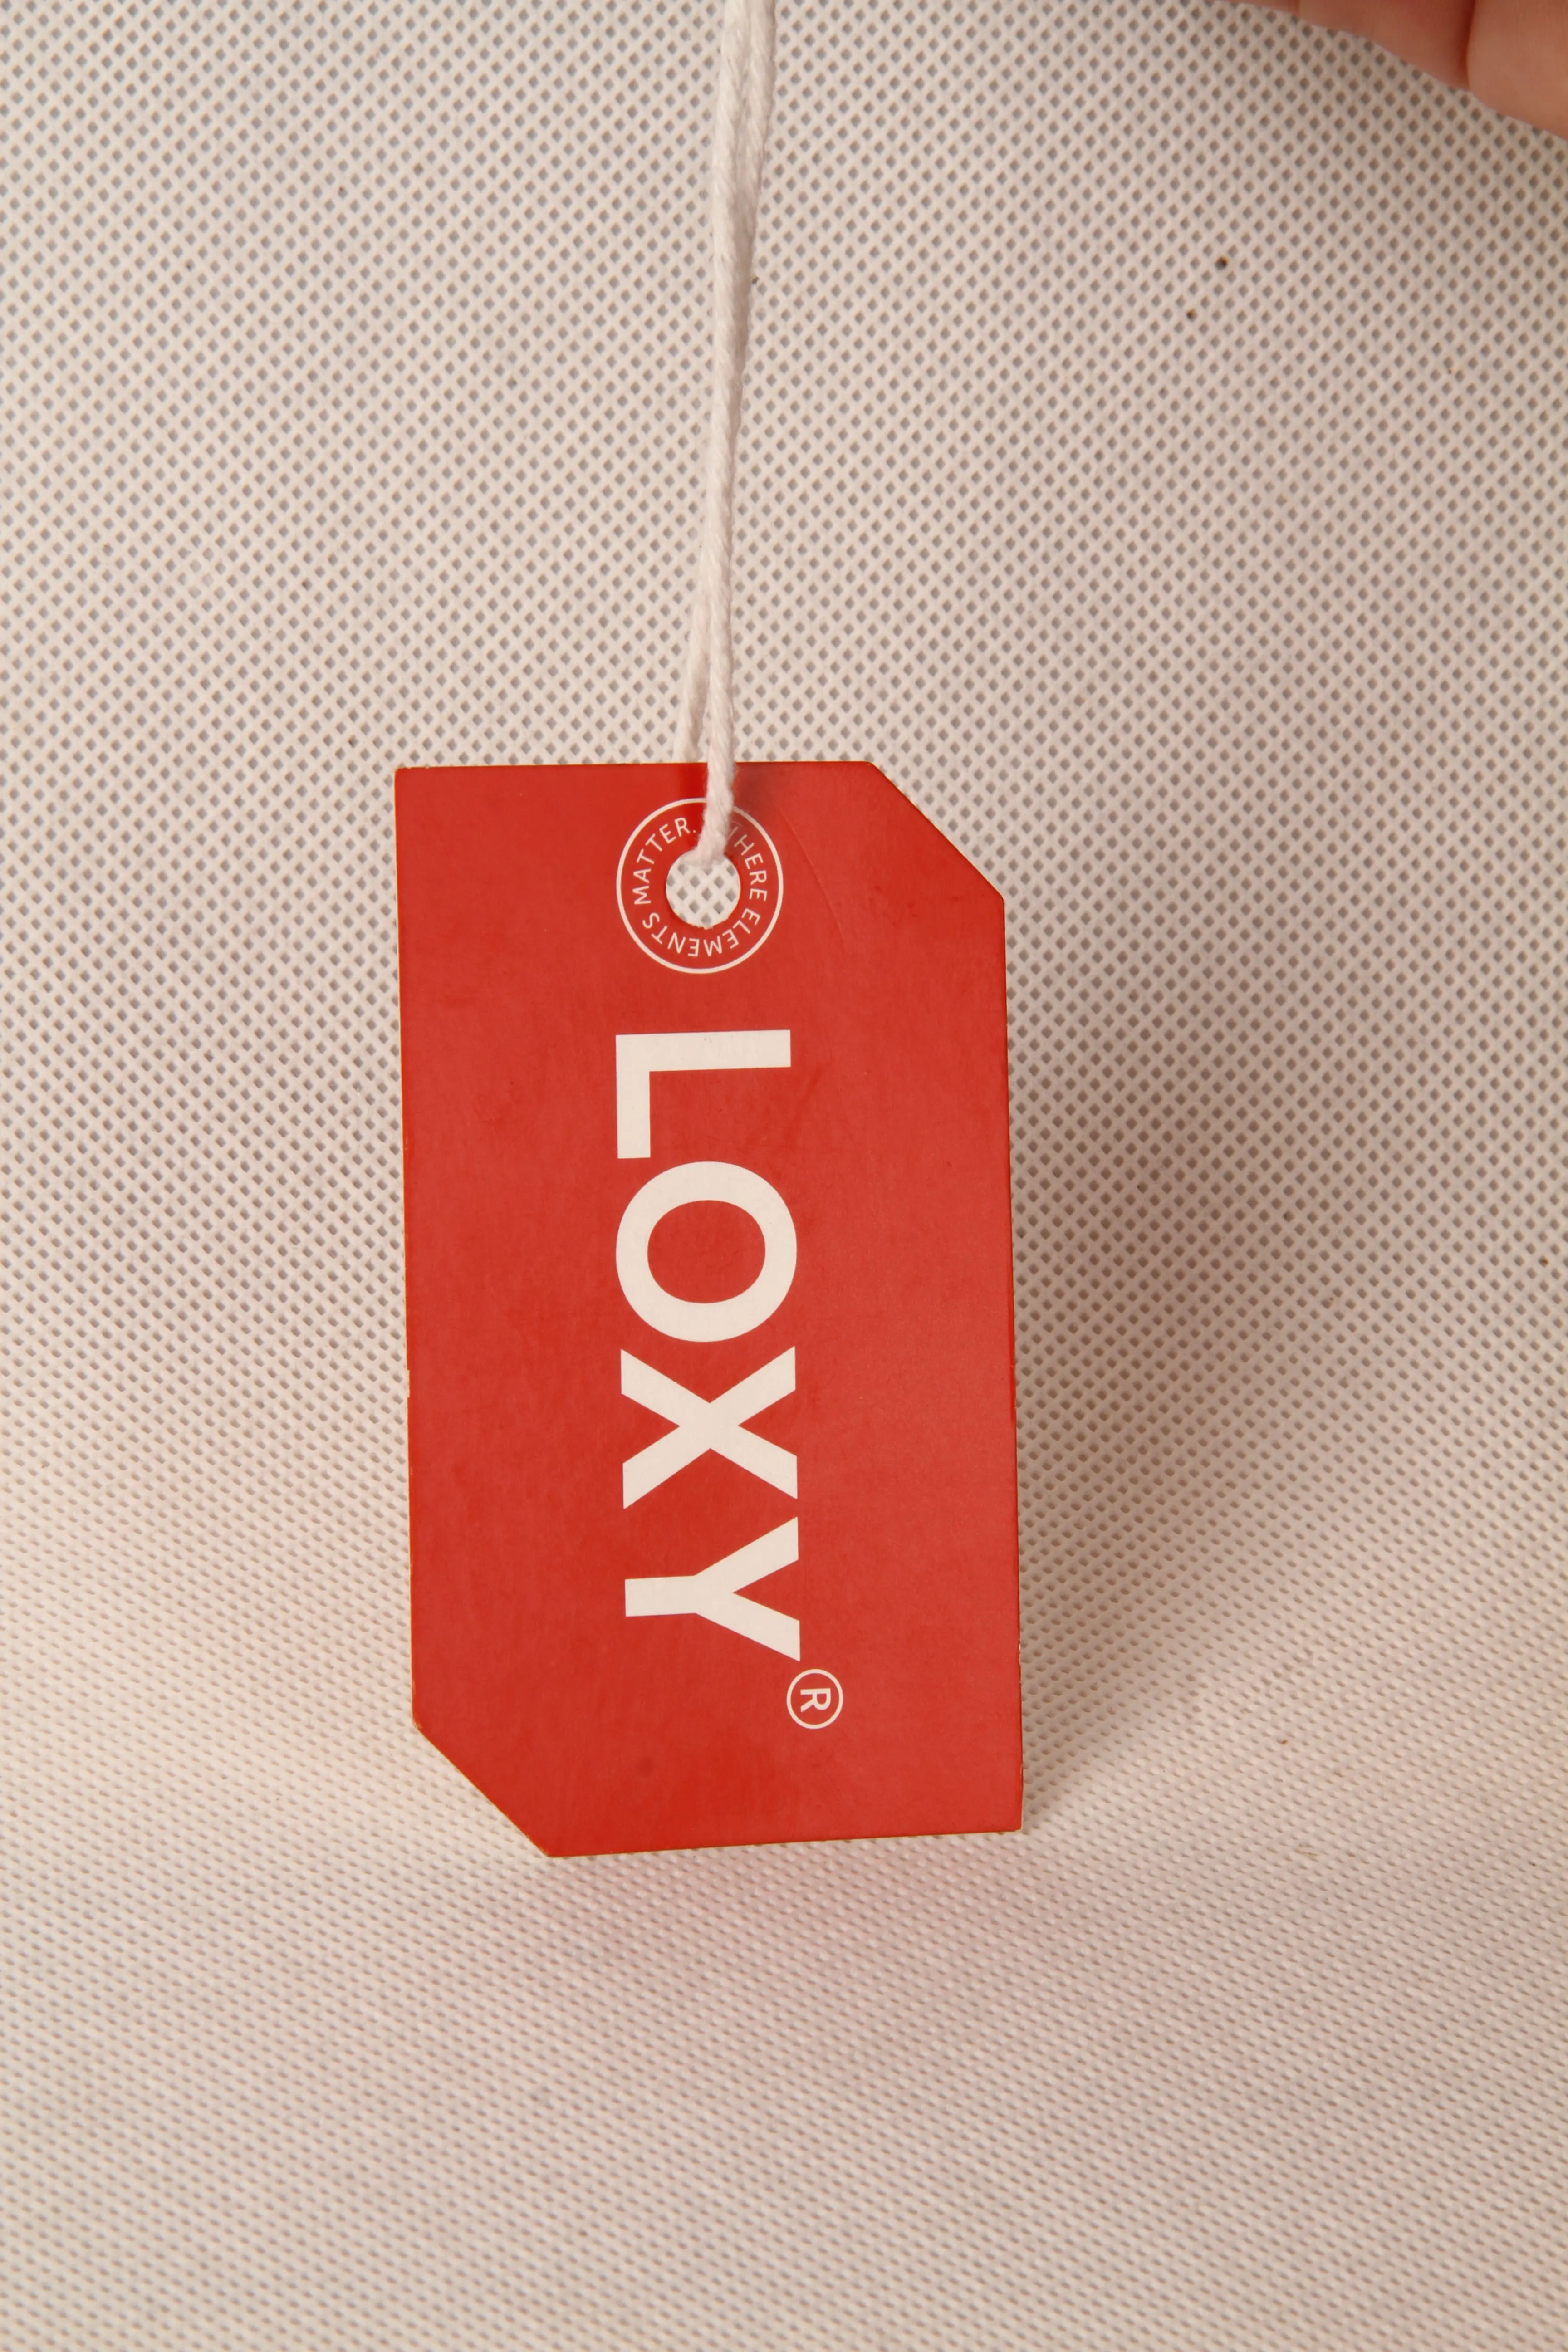 Custom swing hang tags designs clothing garment t logo tag